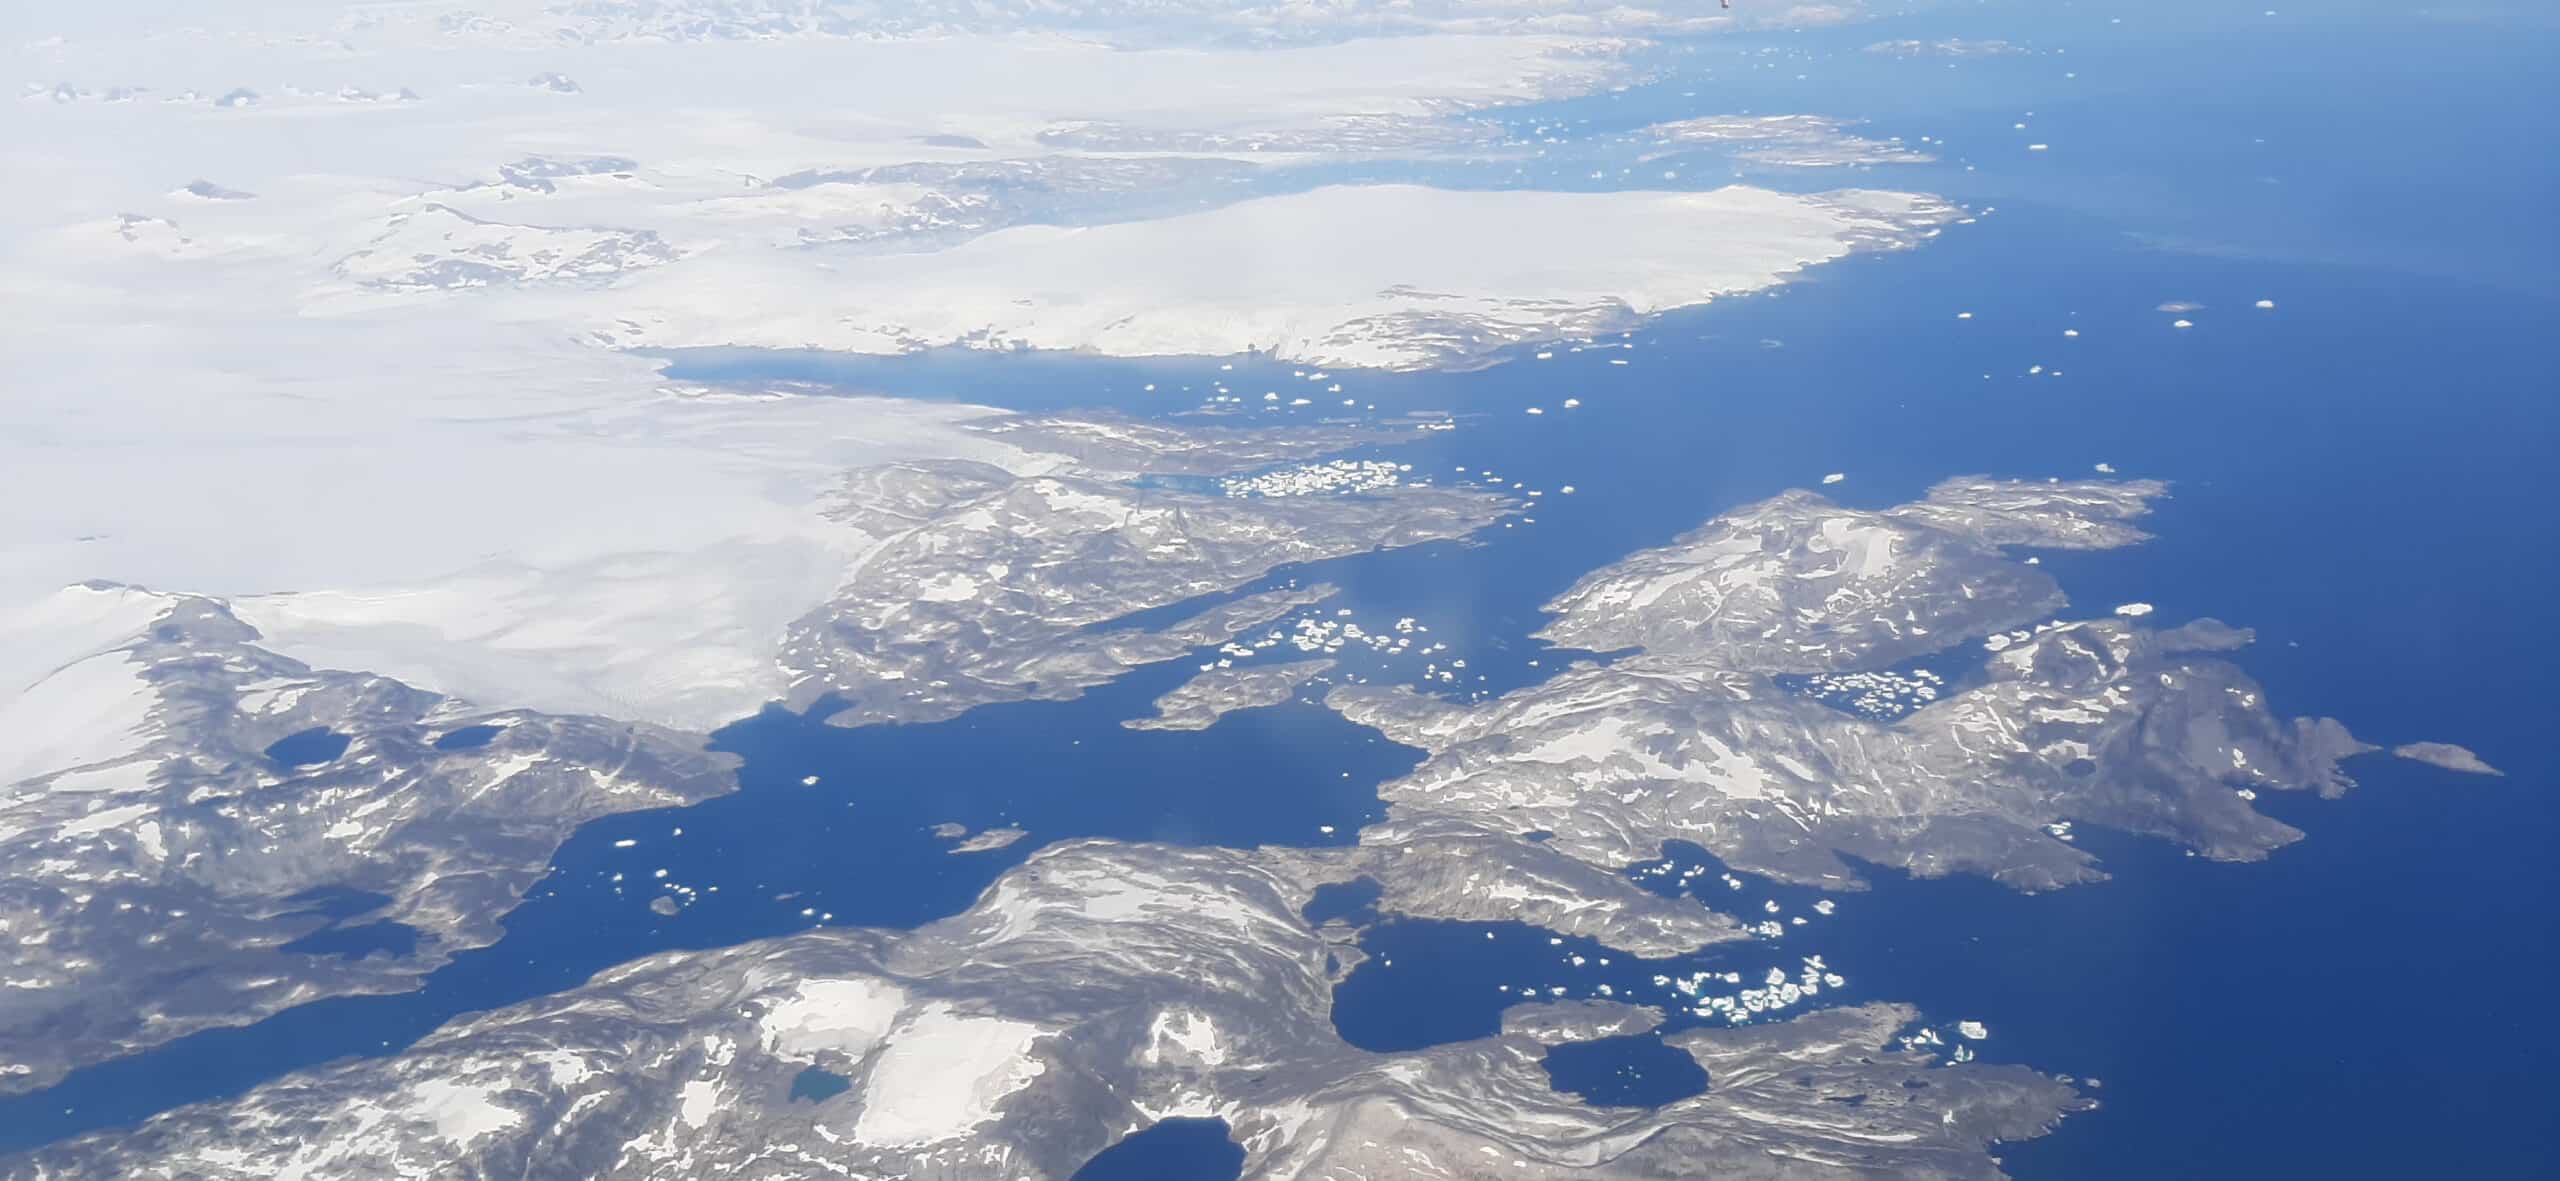 Le Groenland, plus grande île du monde ?